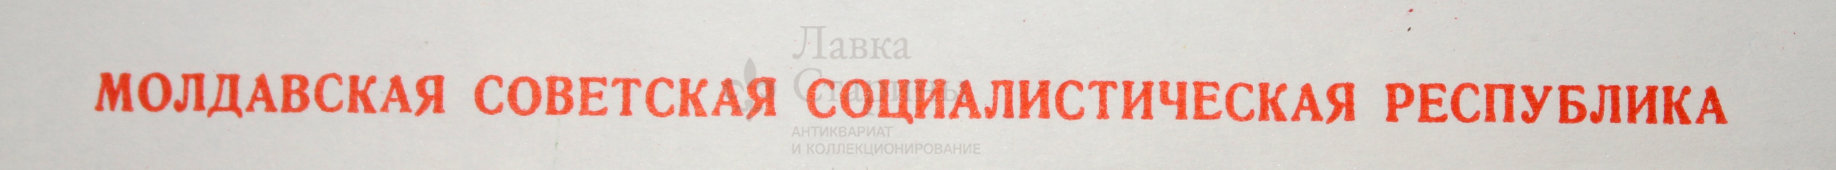 Советский плакат «Молдавская советская социалистическая республика», художник Г. Фишер, Москва, 1972 г.